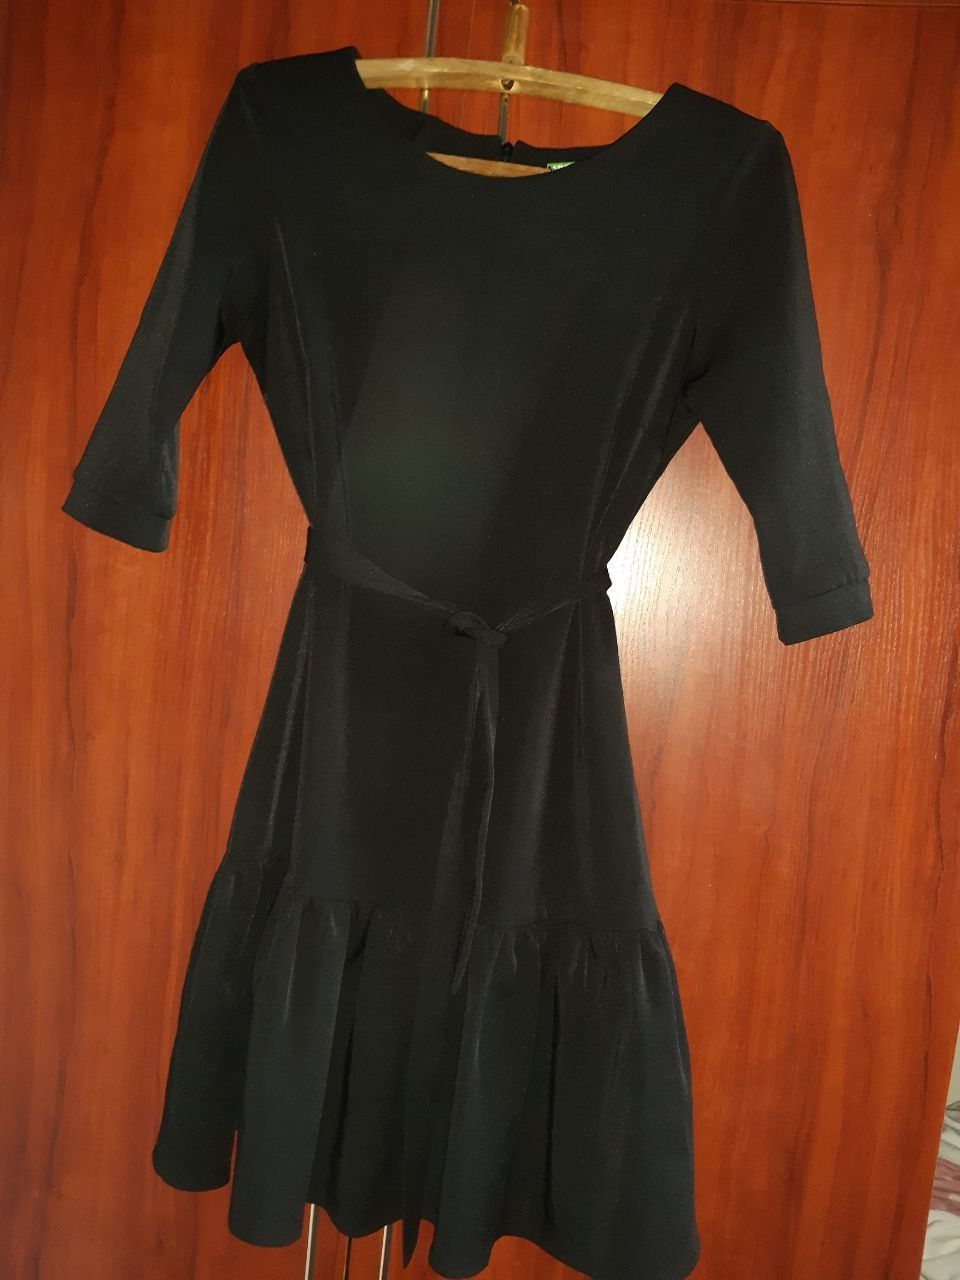 Жіноча сукня чорна